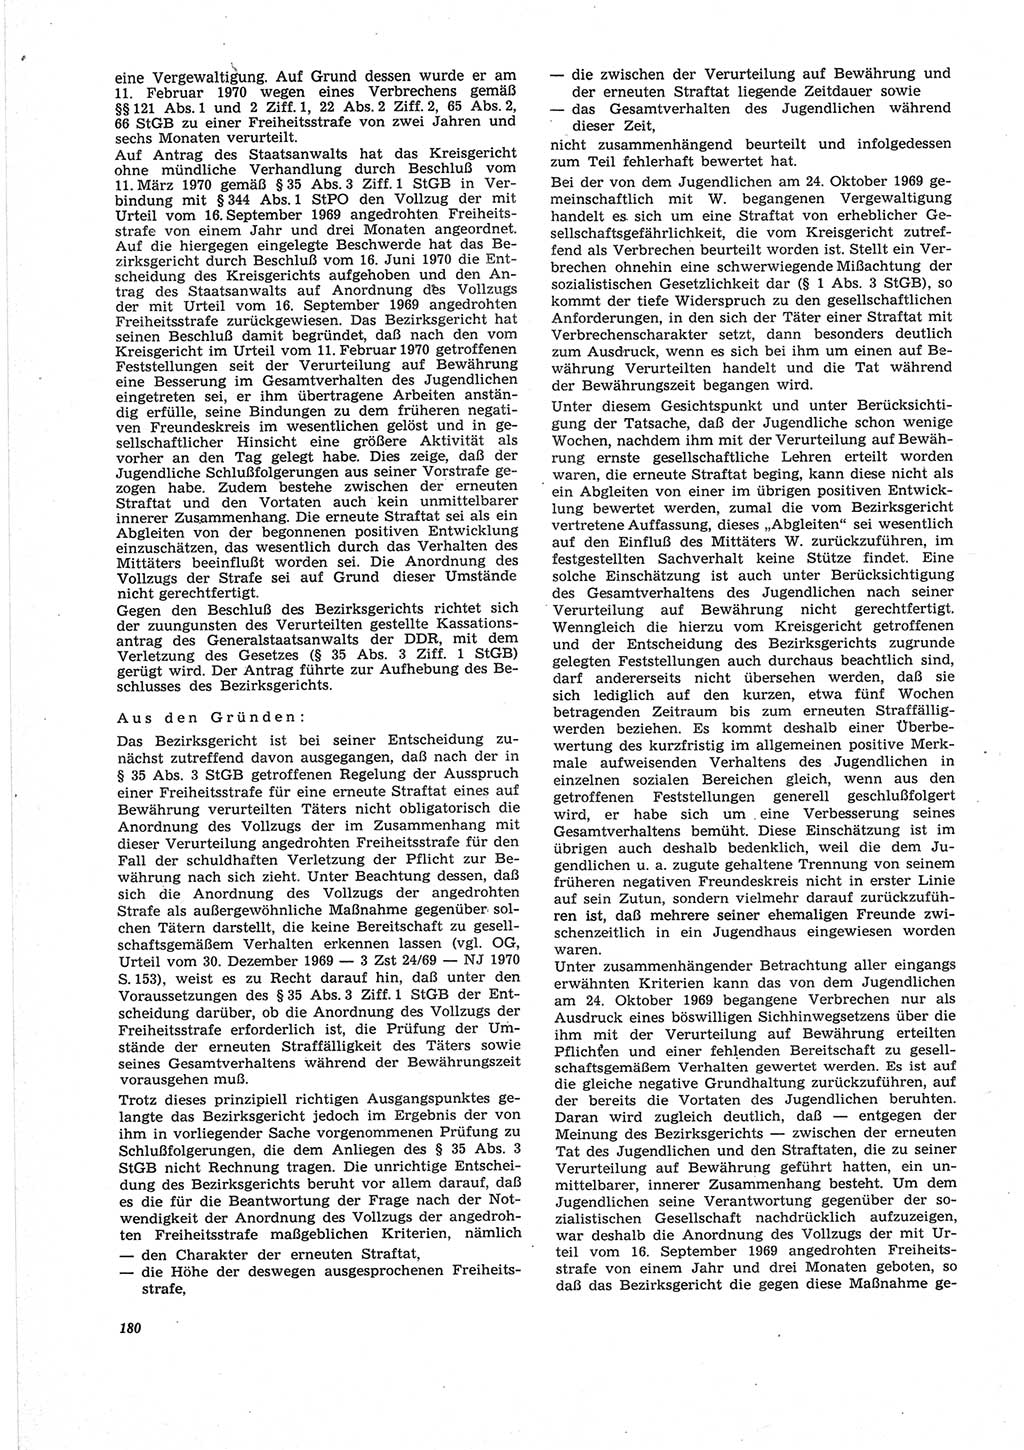 Neue Justiz (NJ), Zeitschrift für Recht und Rechtswissenschaft [Deutsche Demokratische Republik (DDR)], 25. Jahrgang 1971, Seite 180 (NJ DDR 1971, S. 180)